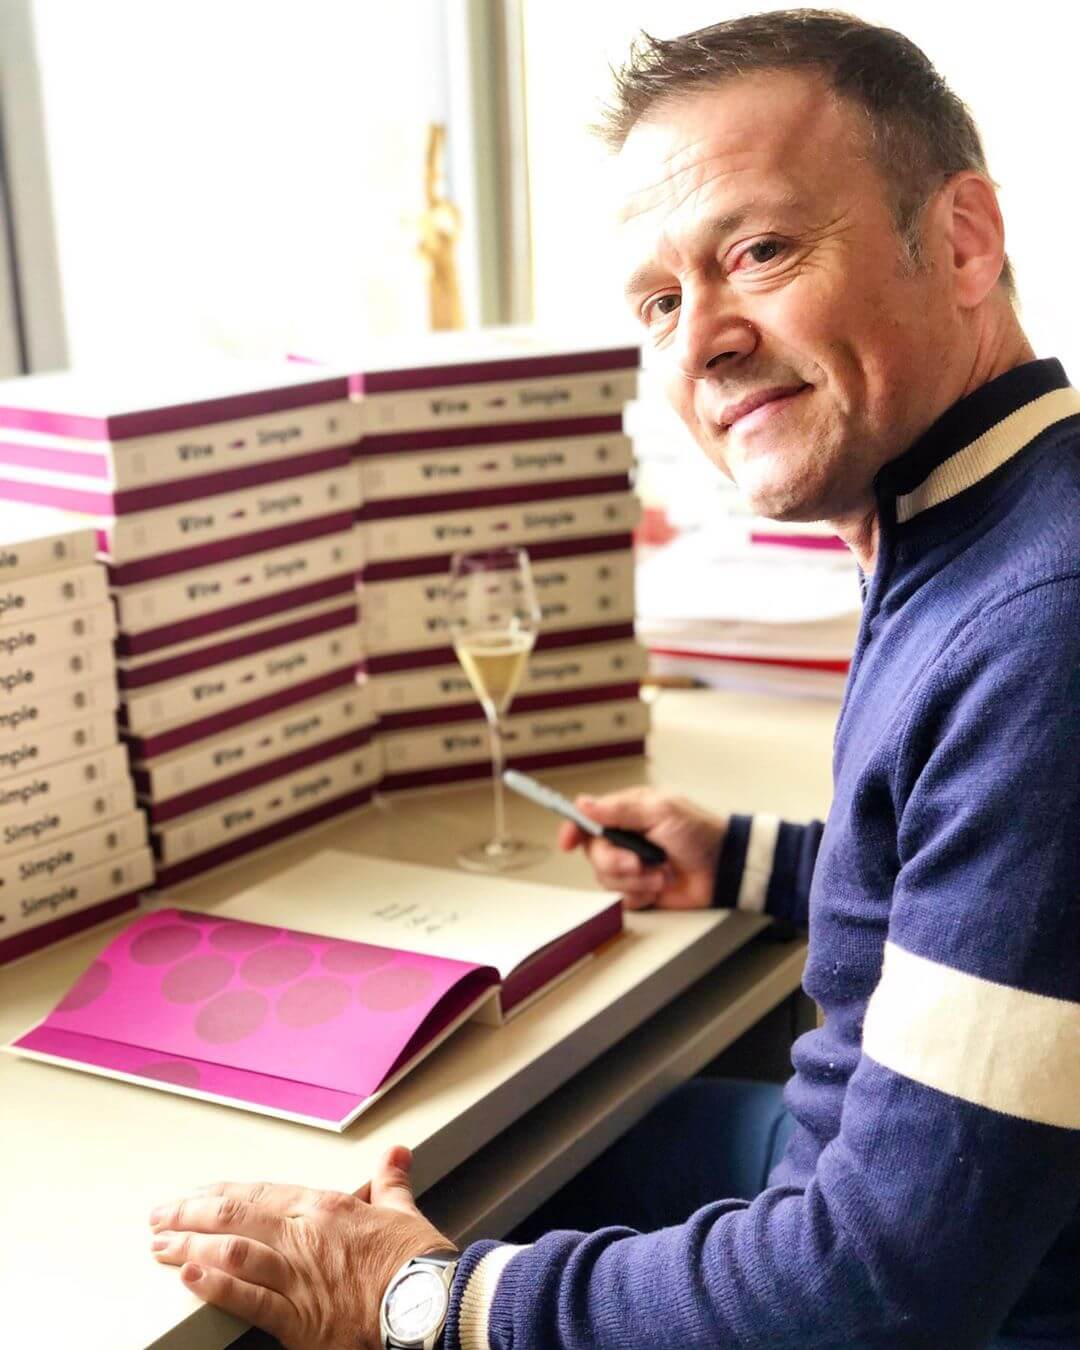 Aldo Sohm signing copies of his book Wine Simple.